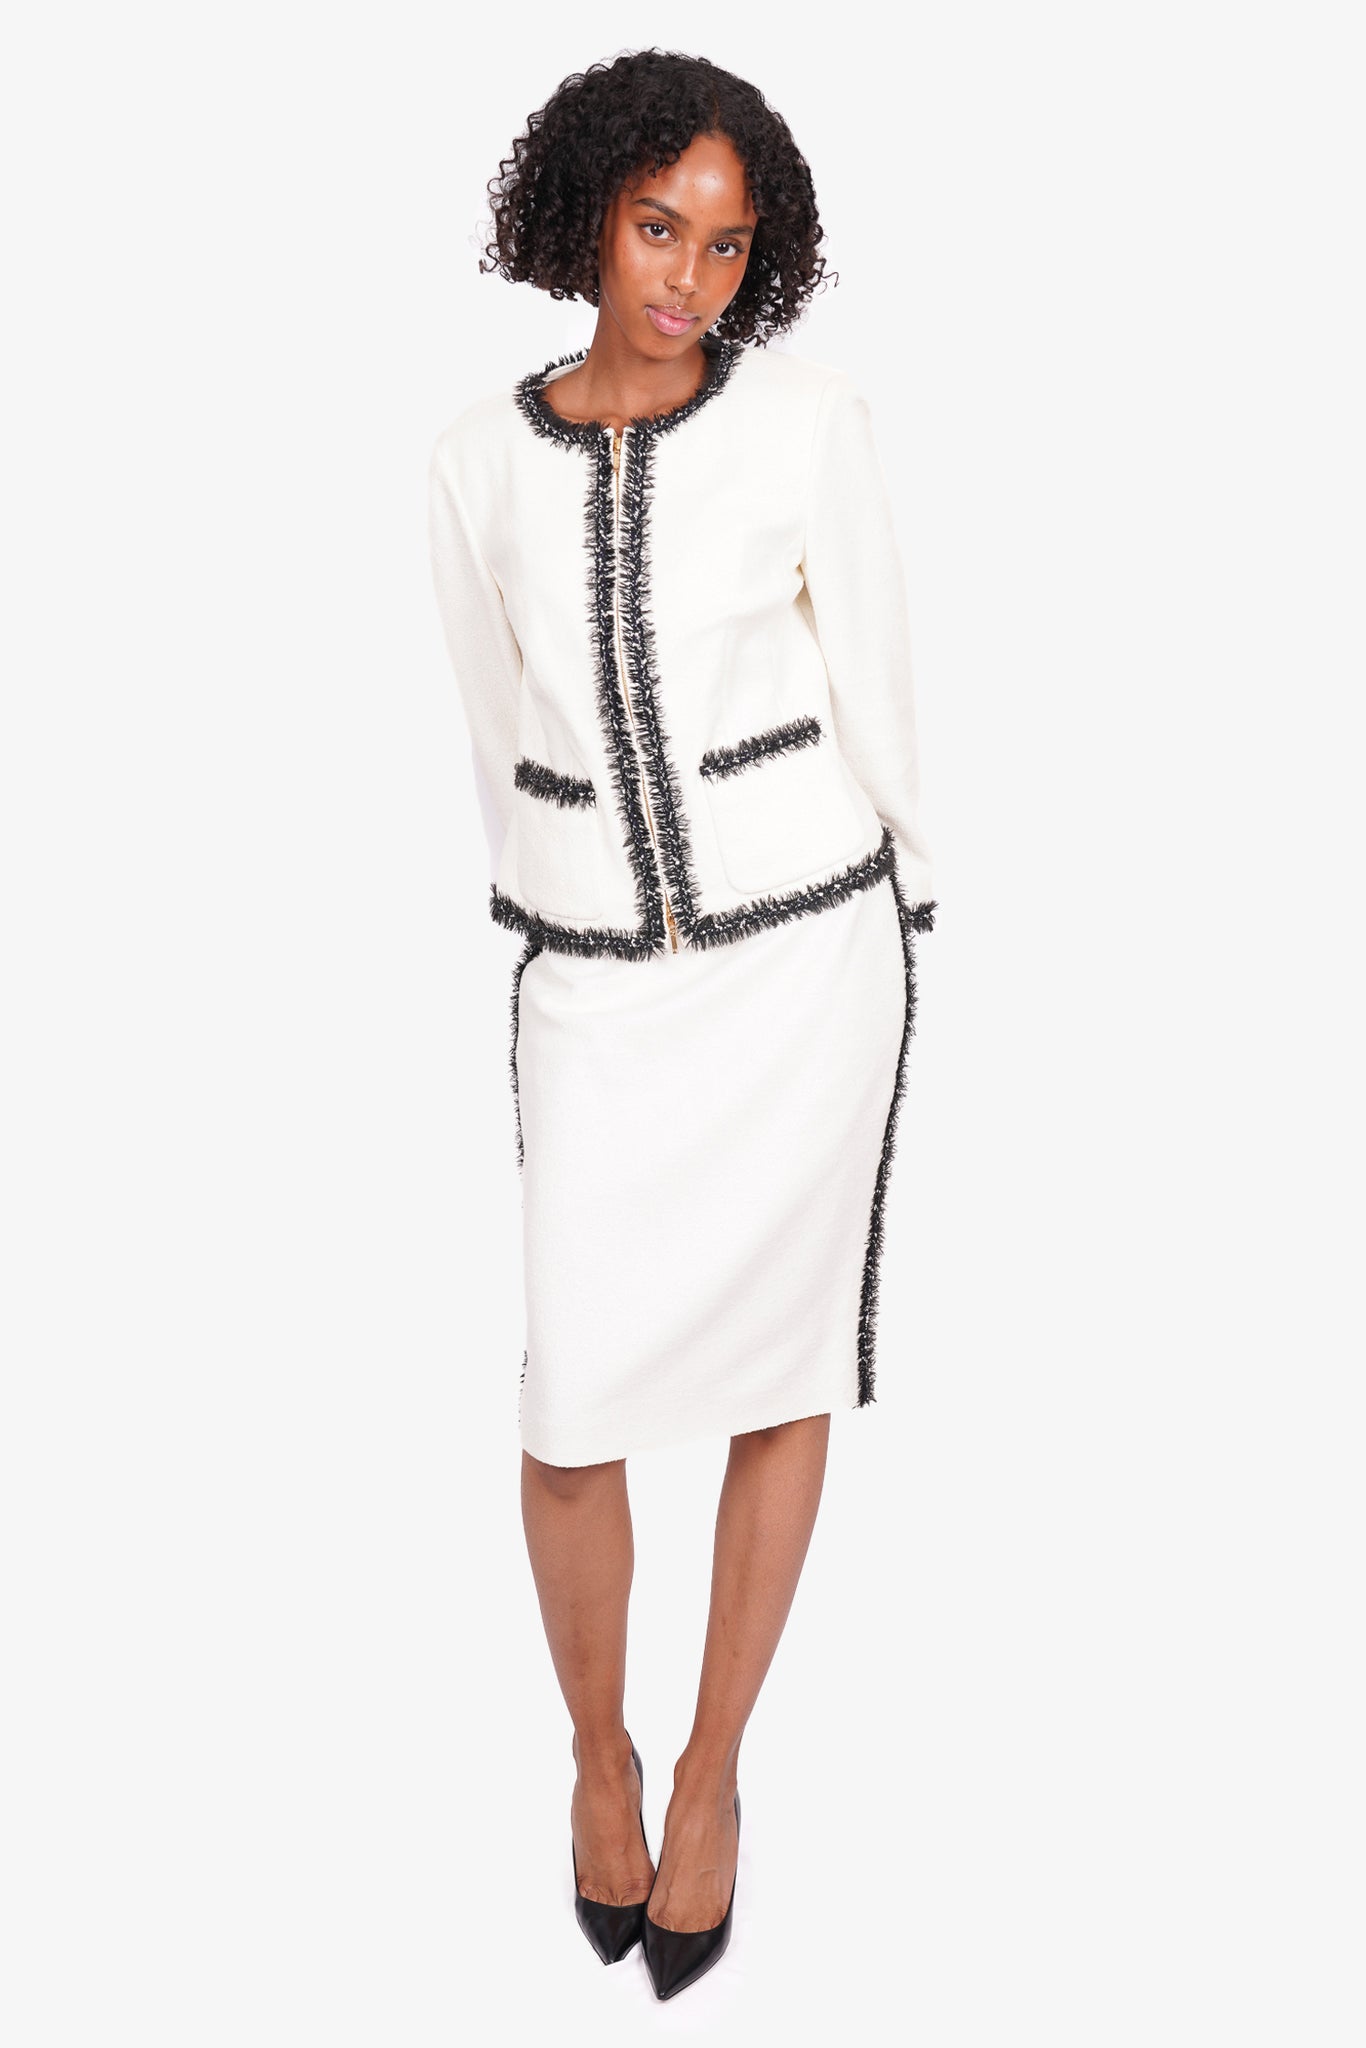 CHANEL- Vintage White CC Suit Jacket and Skirt Set - Size 38 - US 6 - -  BougieHabit